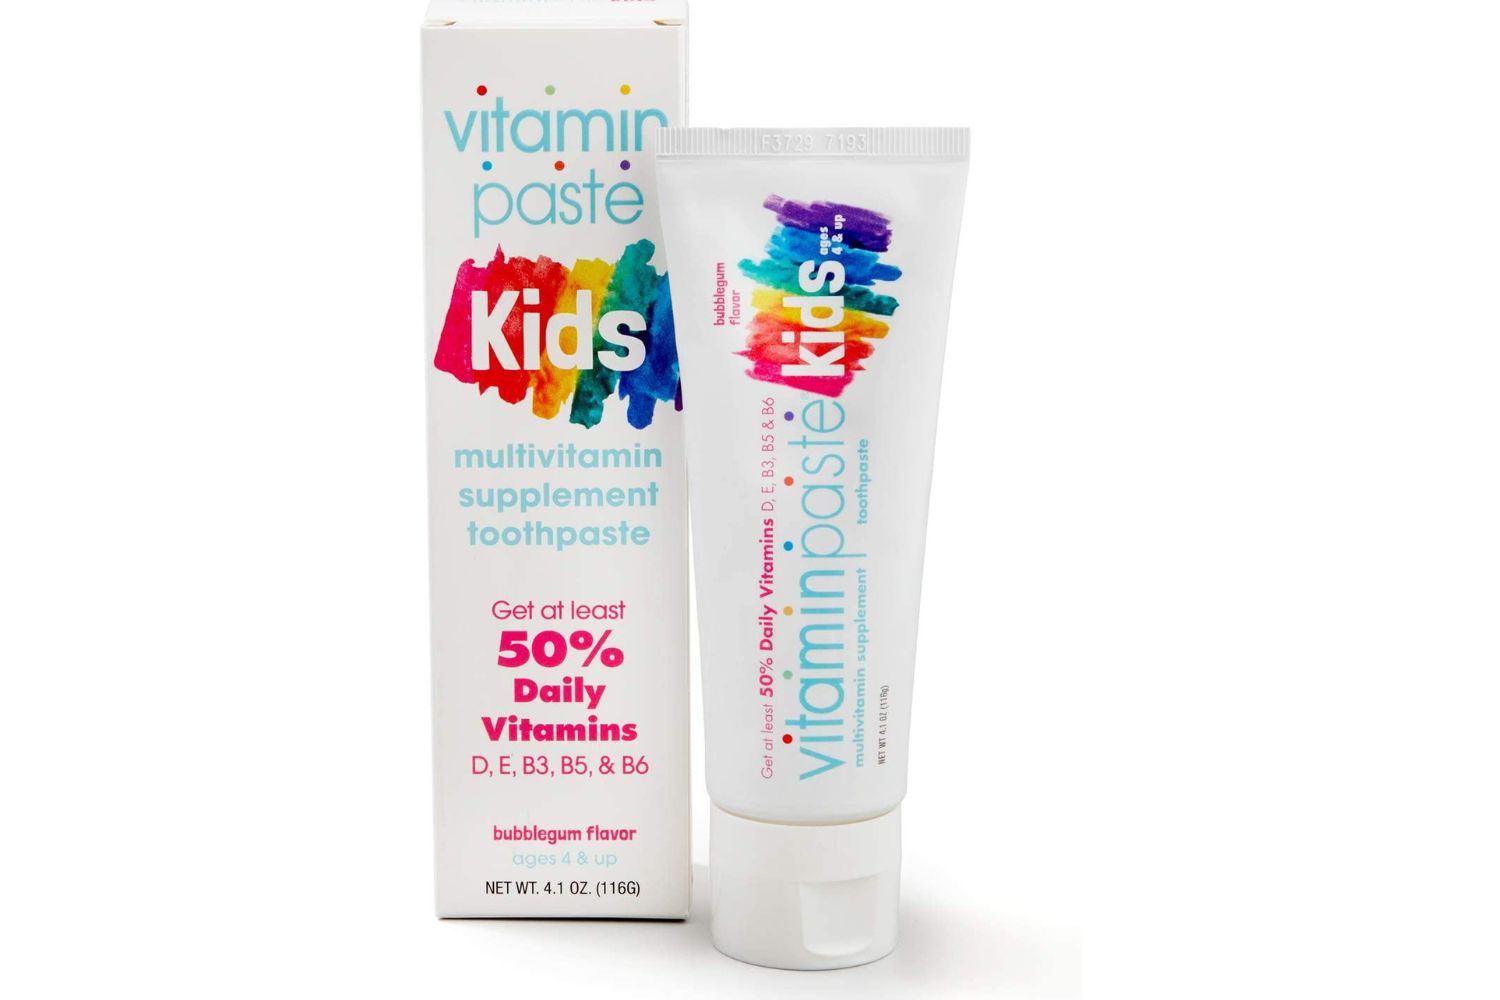 Vitaminpaste儿童牙膏